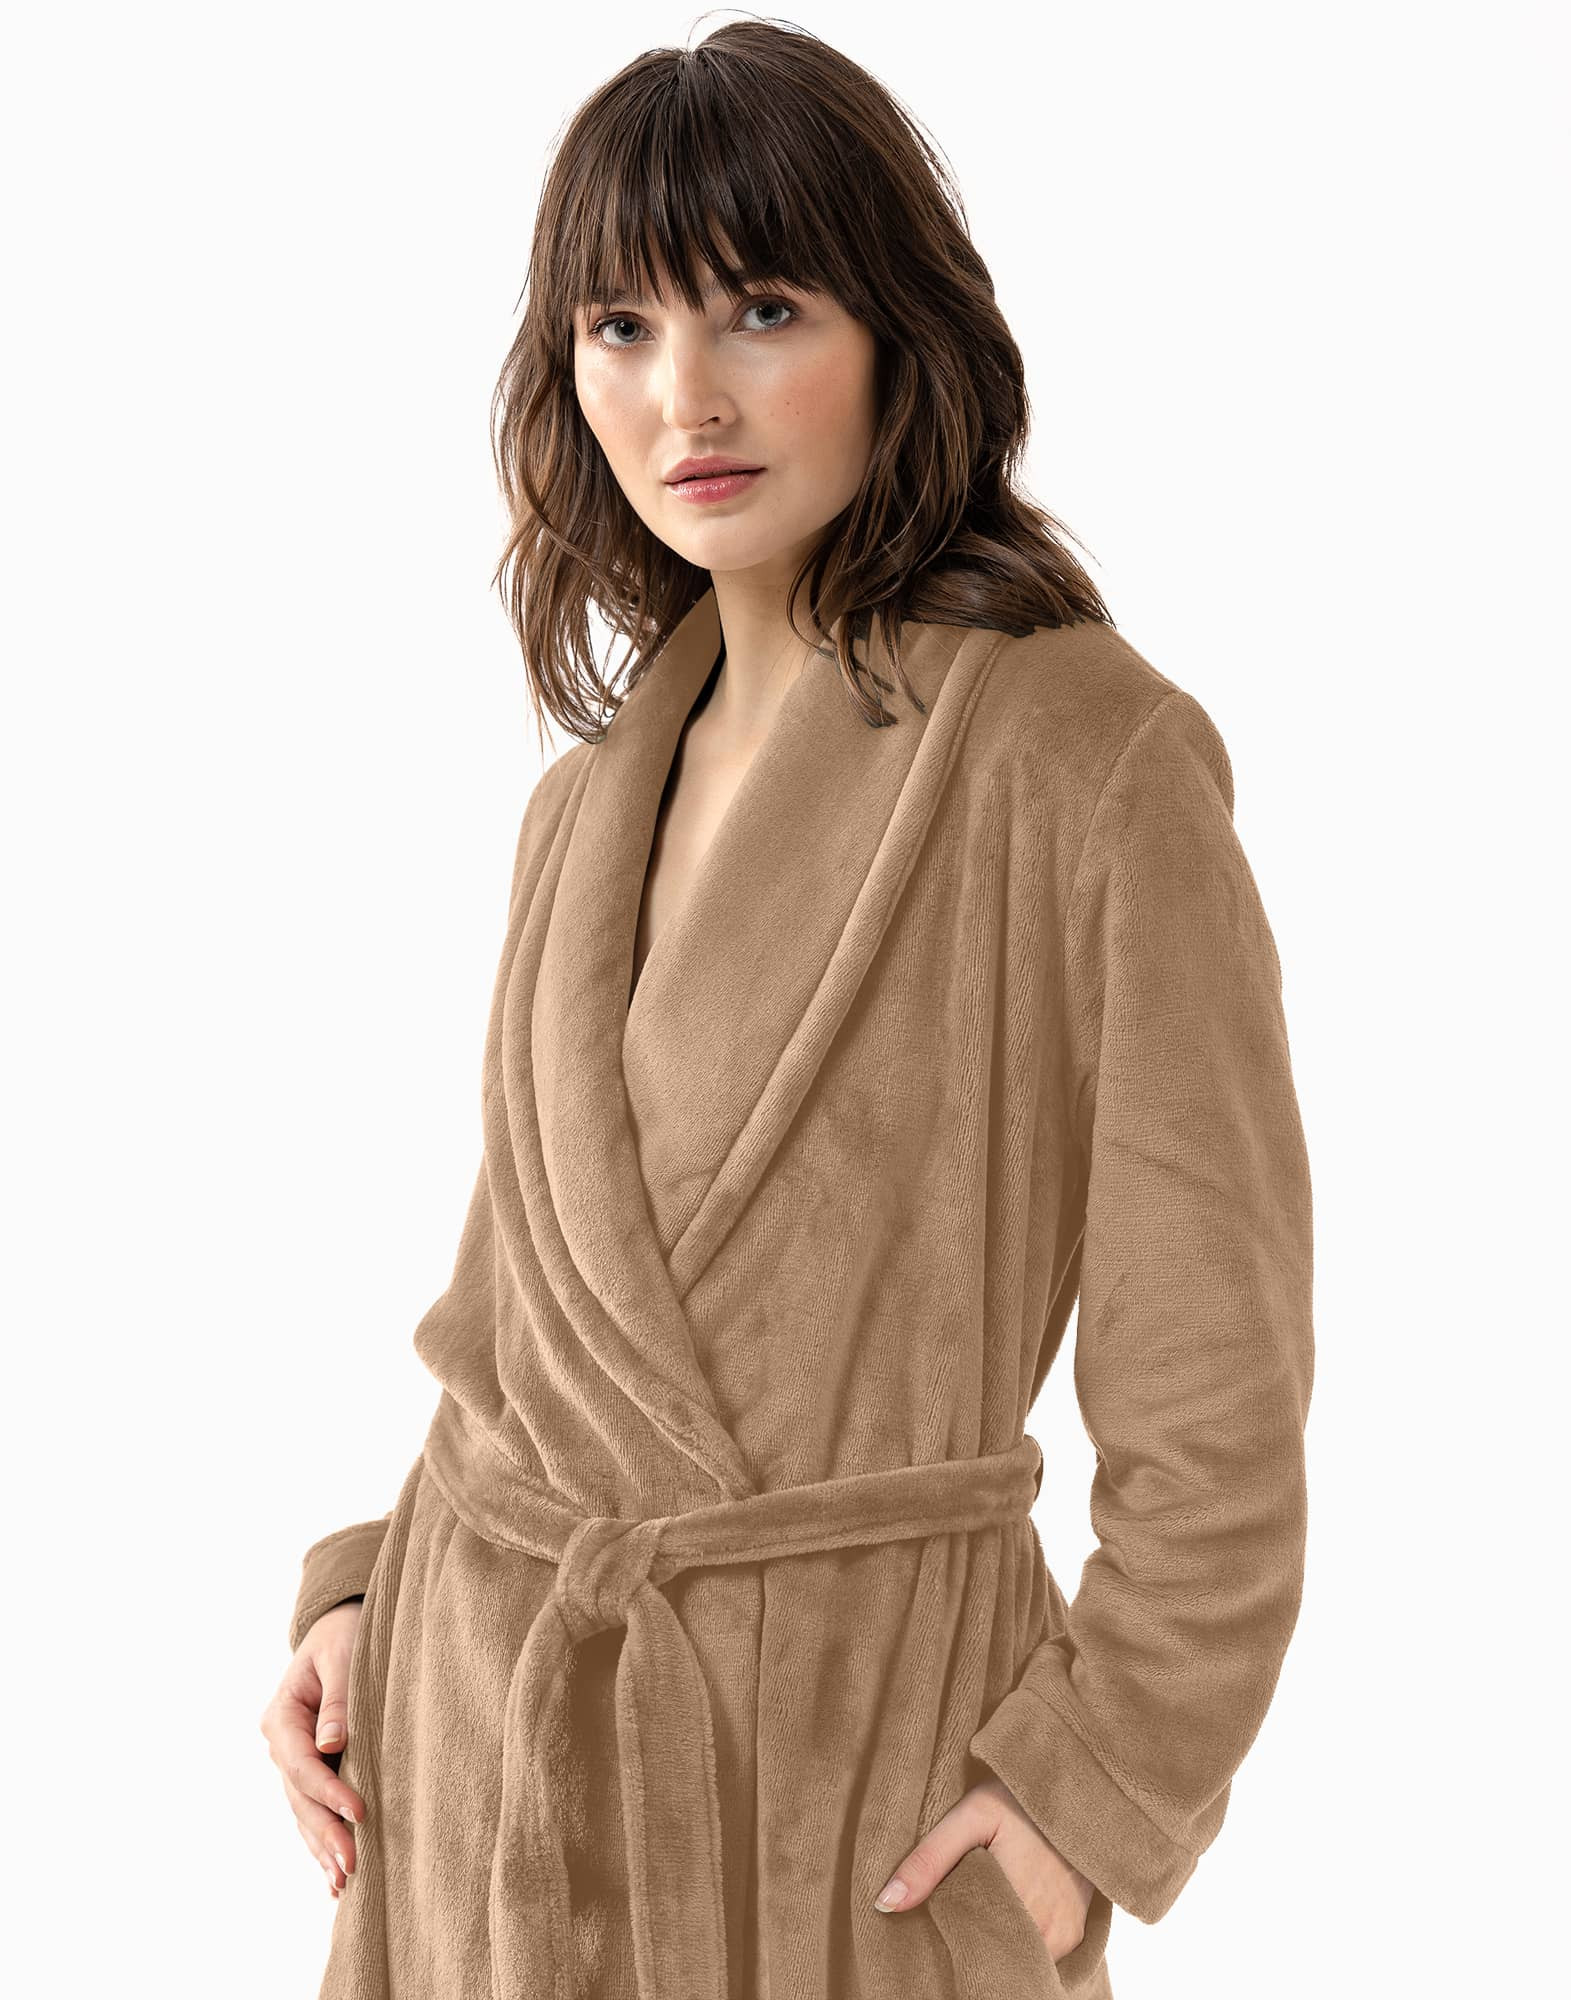 Plush flannel twill bathrobe ESSENTIEL 661 in honey gold